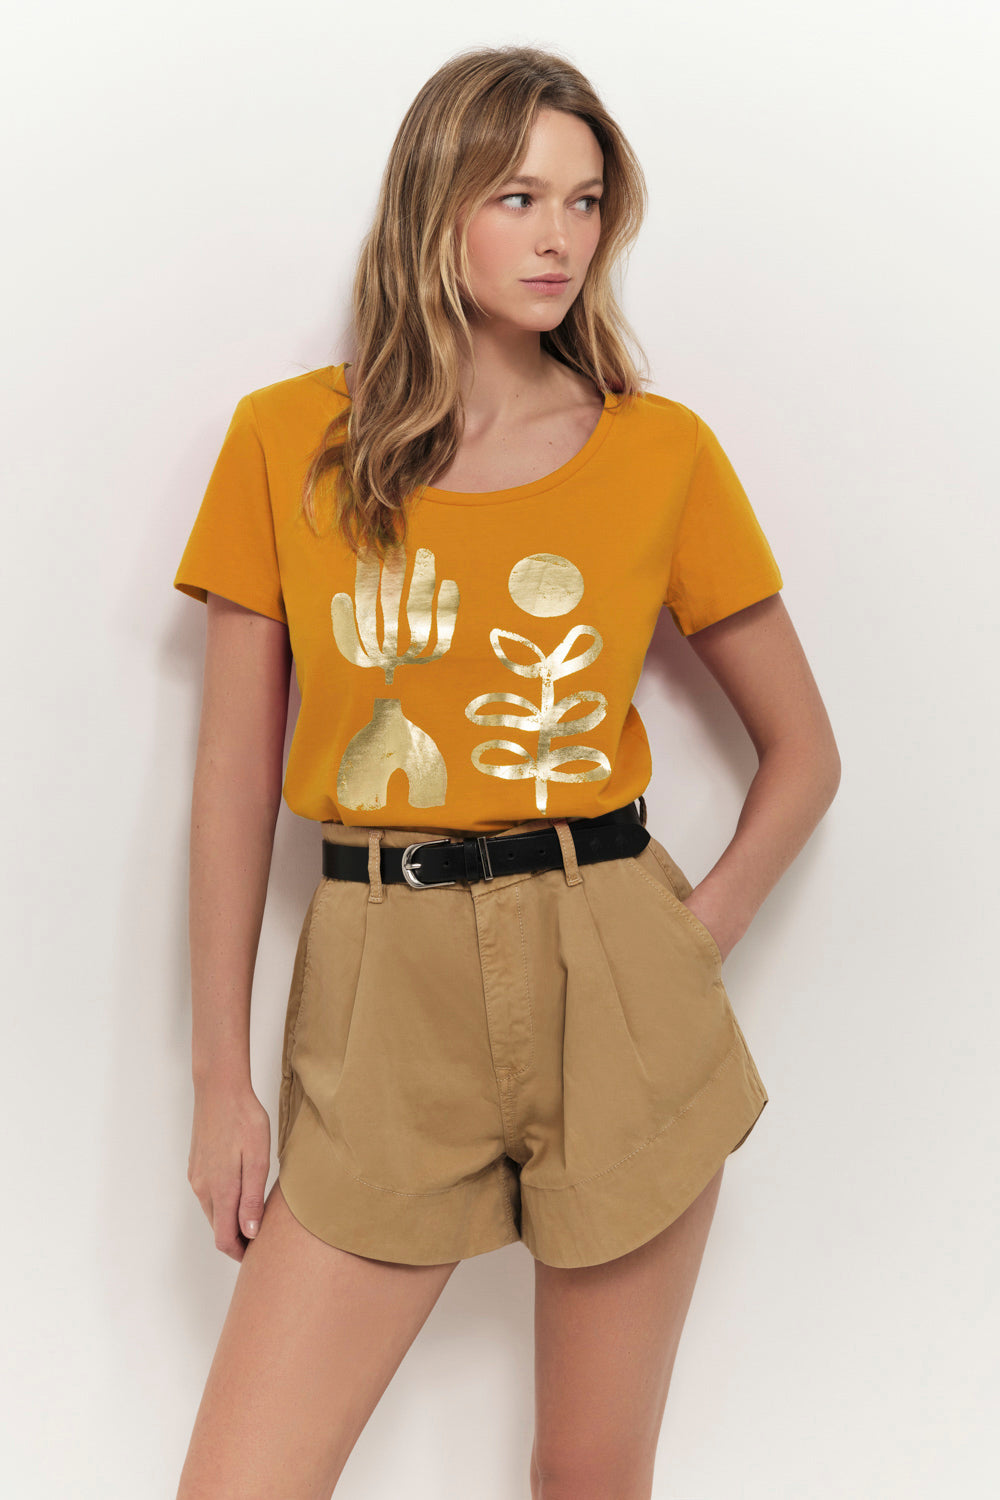 MAREVA - T-shirt miel coton bio visuel arty minimal